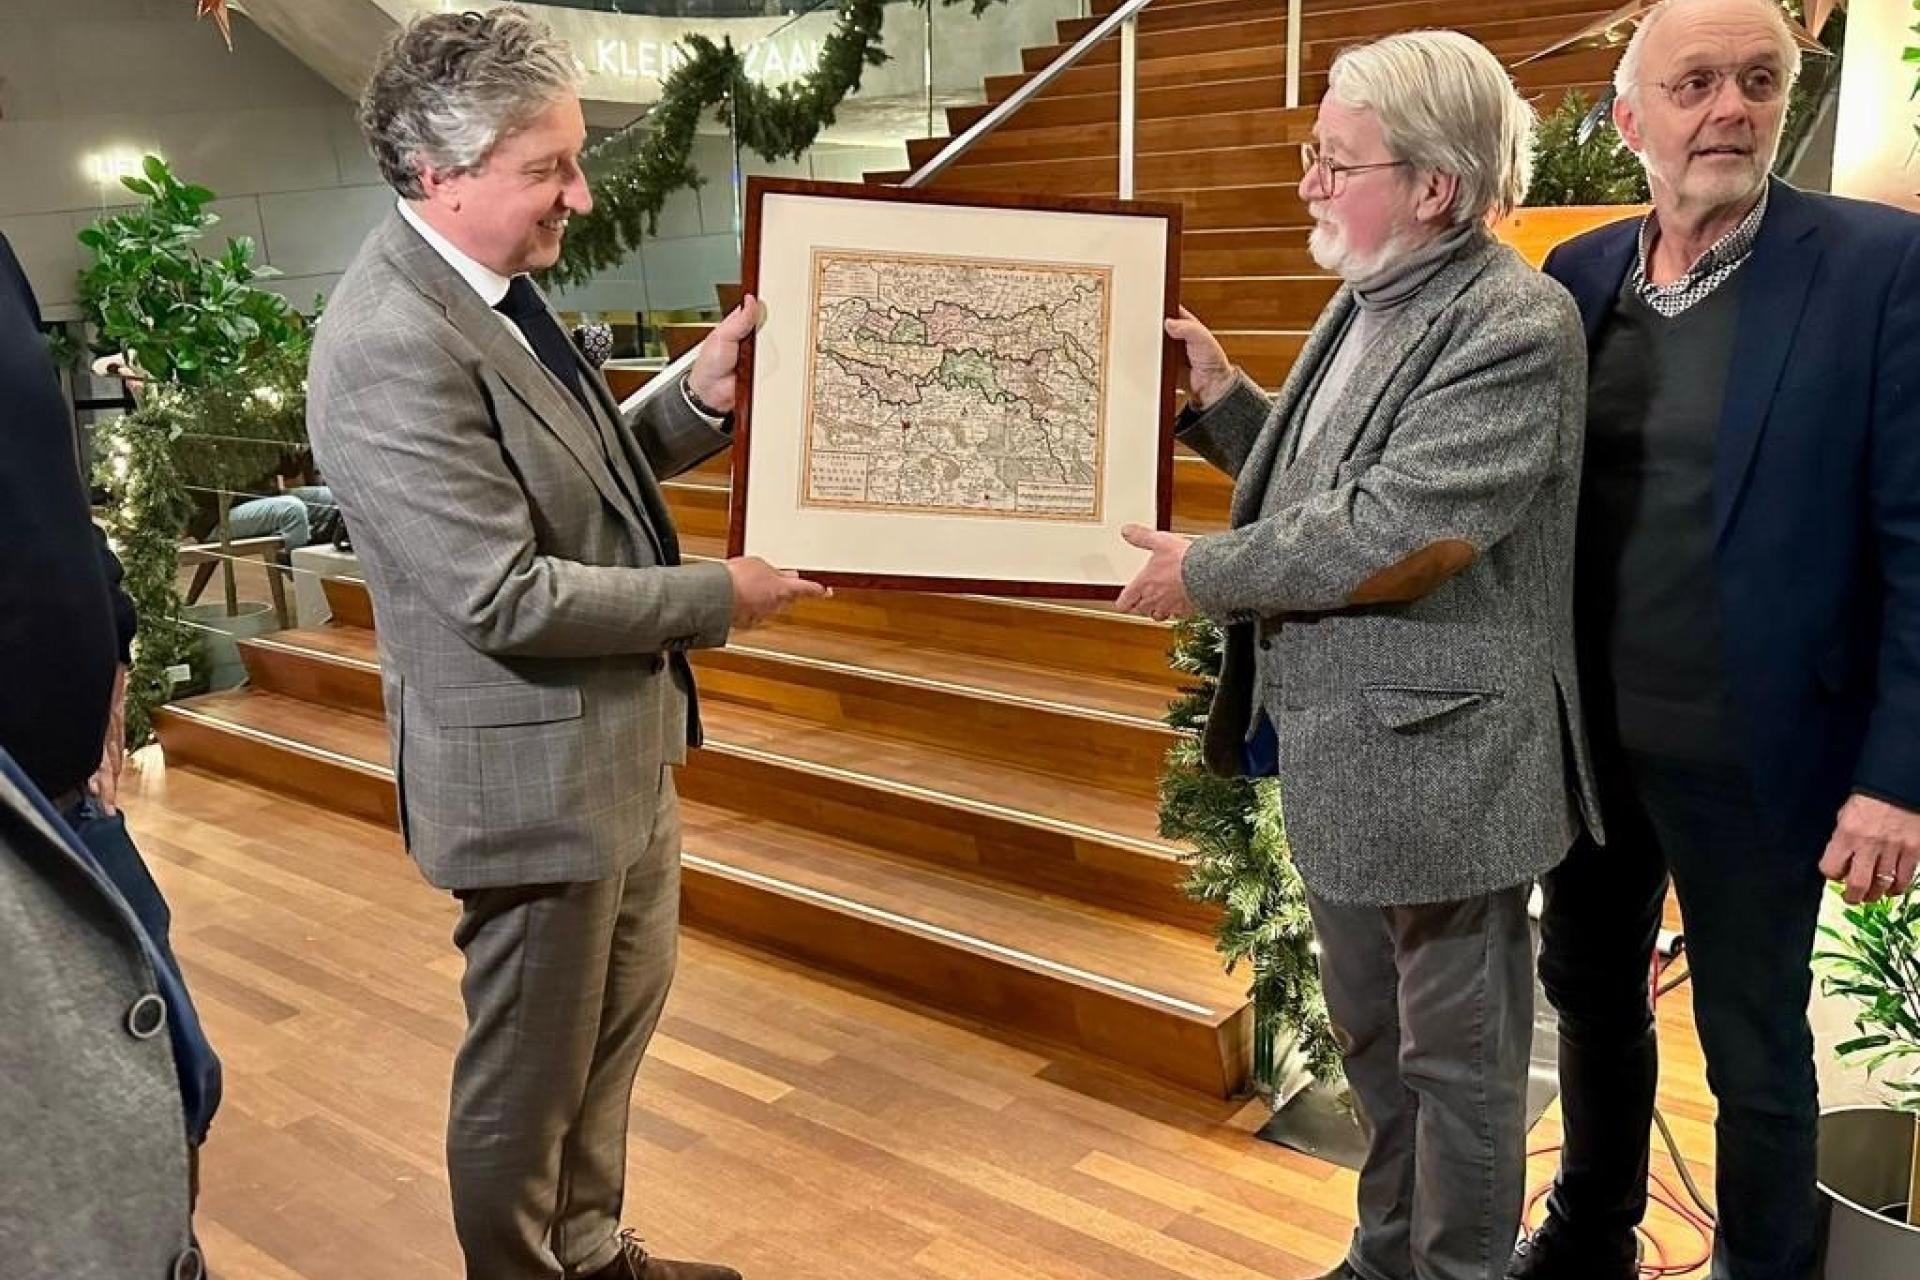 Drie mannen, links burgemeester krijgt een oude kaart van het Rivierengebied ingelijst aangeboden. 